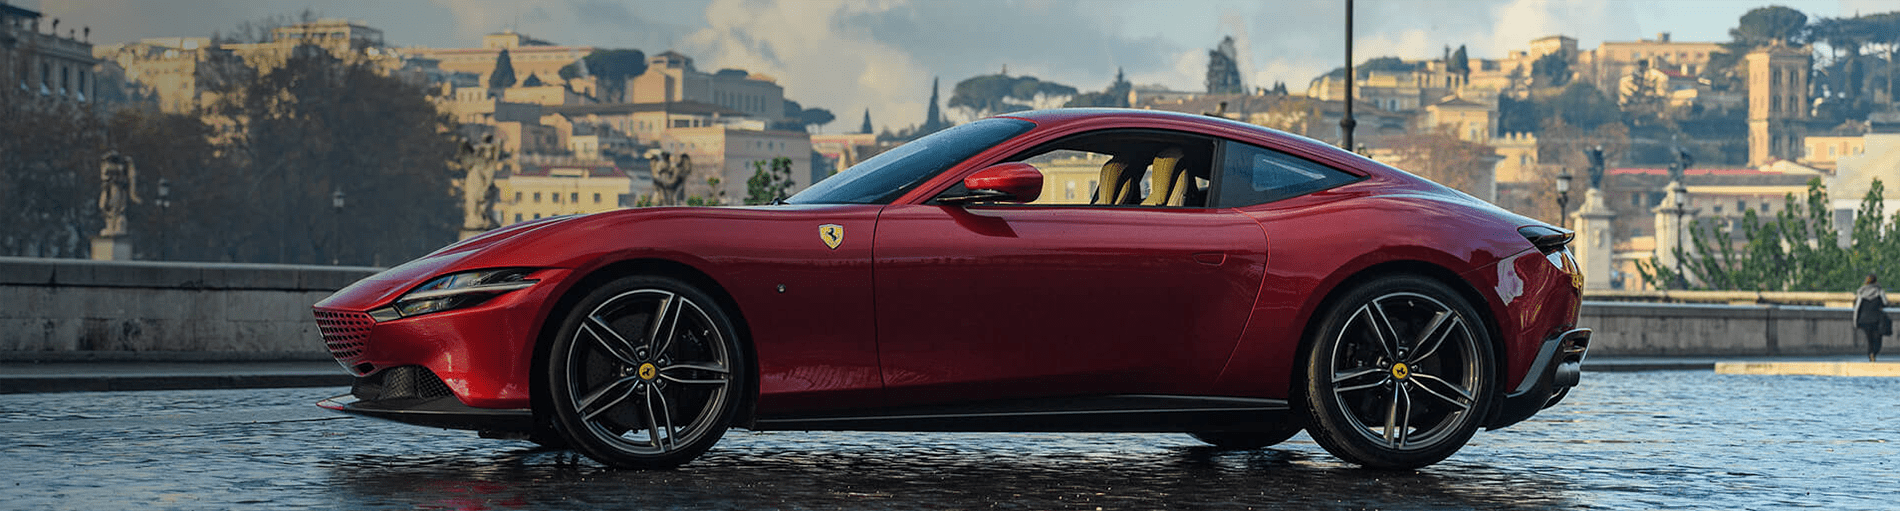 MAG Ferrari Pick Up & Delivery Service